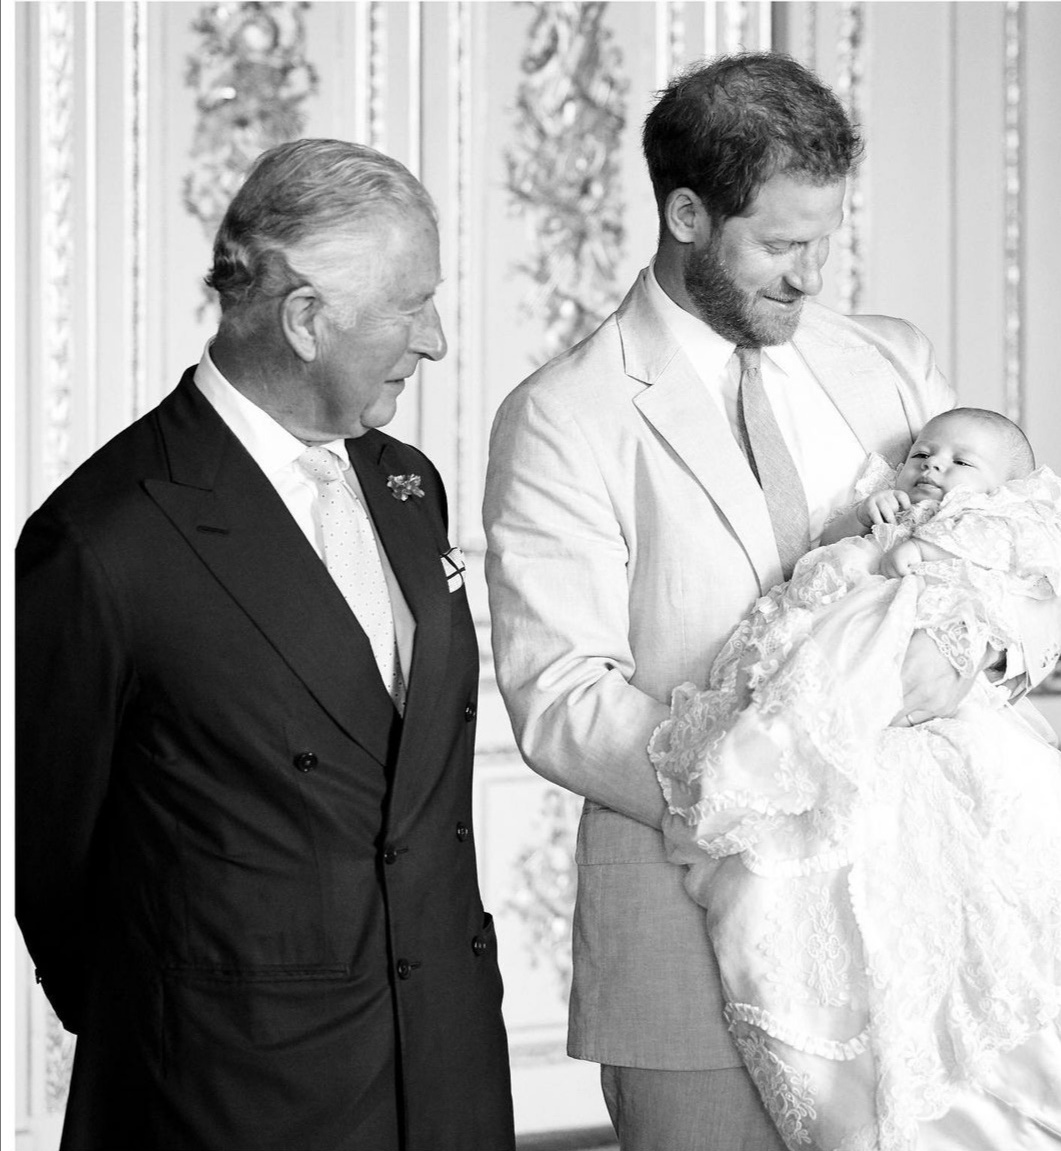 هاري يحمل آرتشي وبجانبه الأمير تشارلز-الصورة من حساب رويال ساسكس على إنستغرام